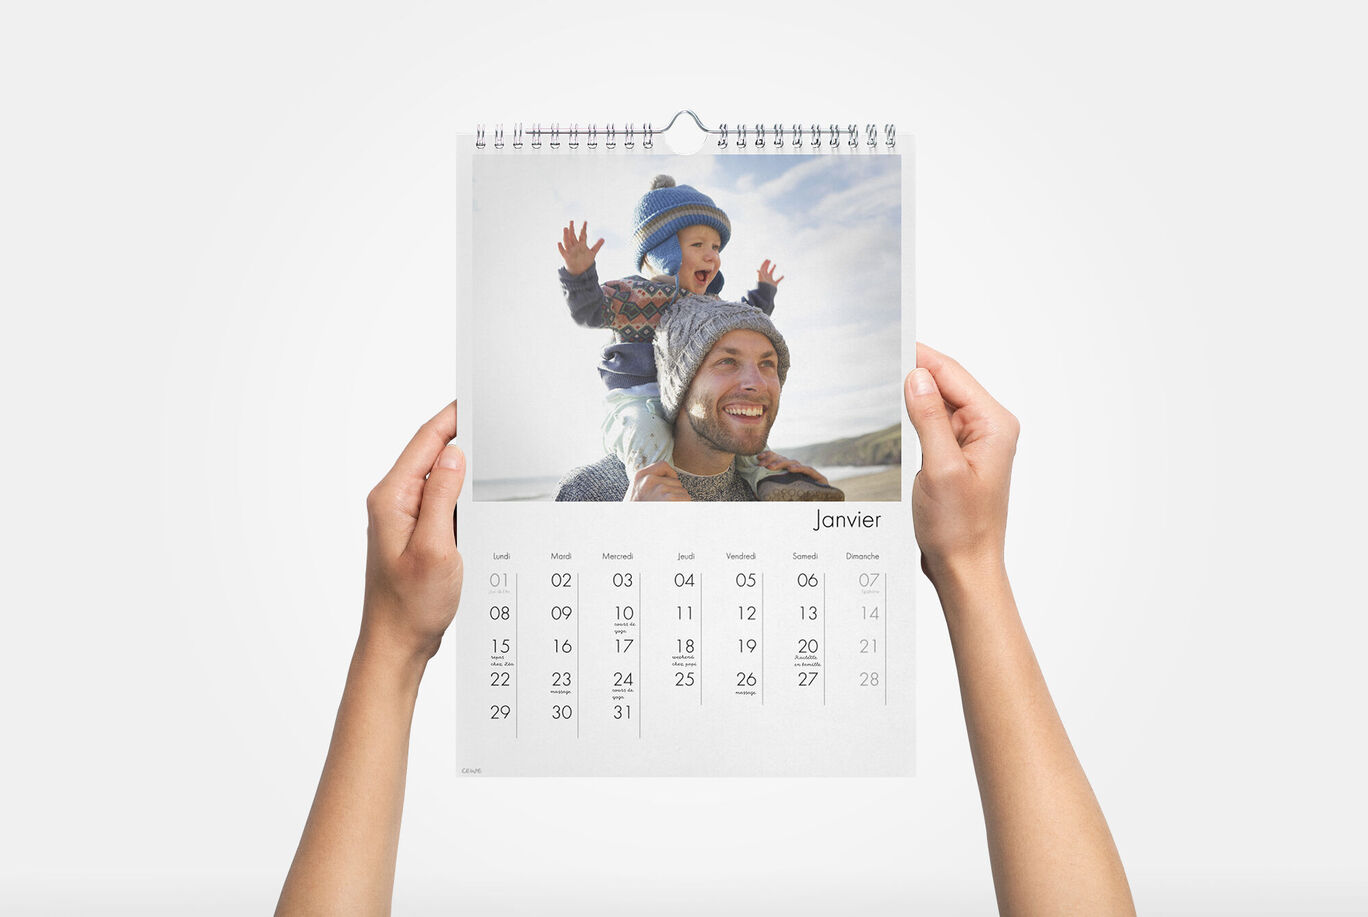 et vous c'est quoi votre calendrier préféré ? #eleclerc #pourtoi